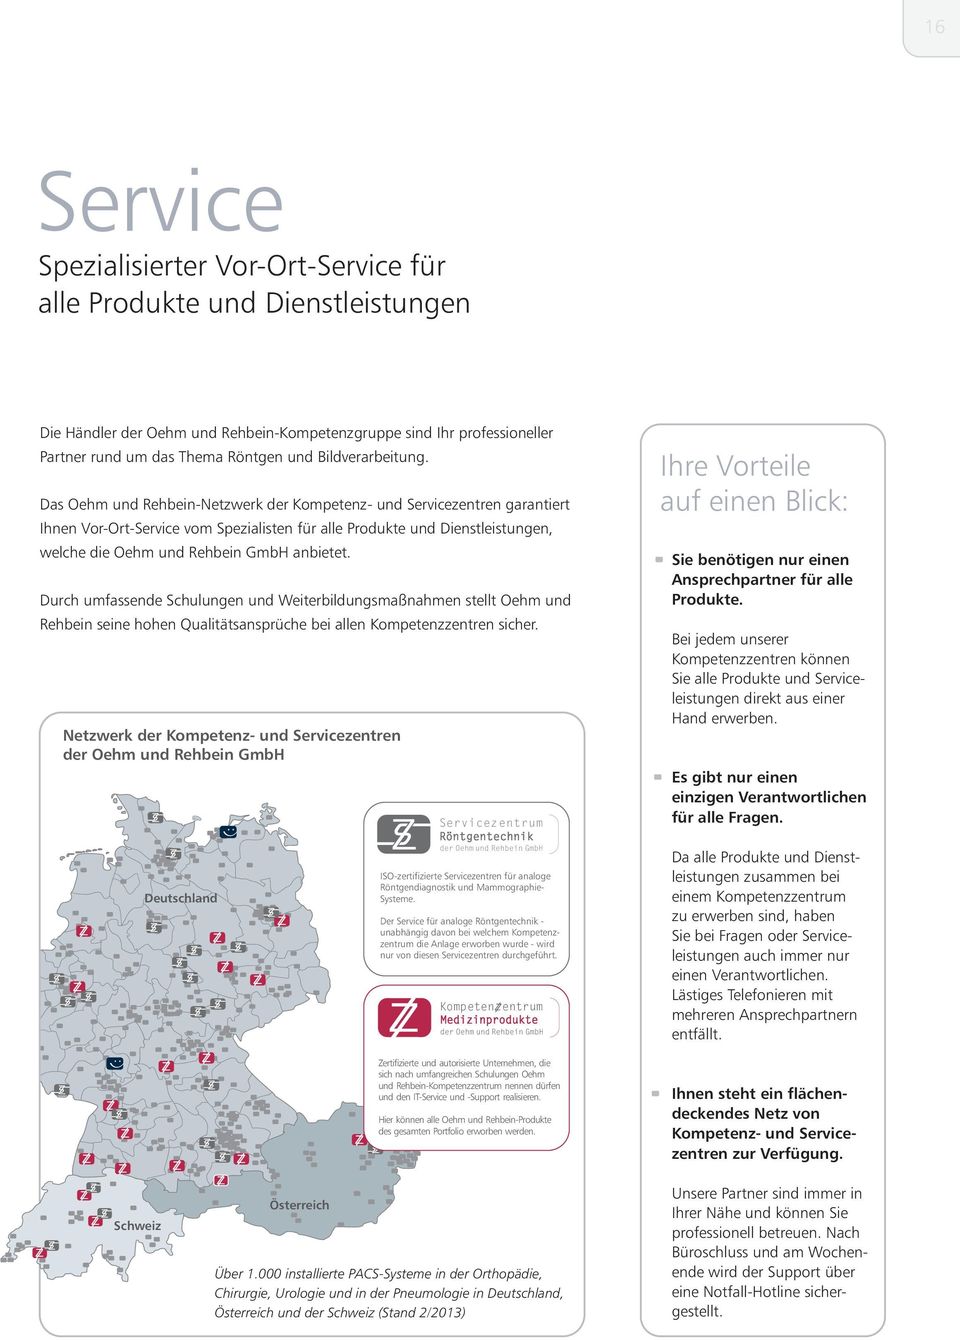 Das Oehm und Rehbein-Netzwerk der Kompetenz- und Servicezentren garantiert Ihnen Vor-Ort-Service vom Spezialisten für alle Produkte und Dienstleistungen, welche die Oehm und Rehbein GmbH anbietet.